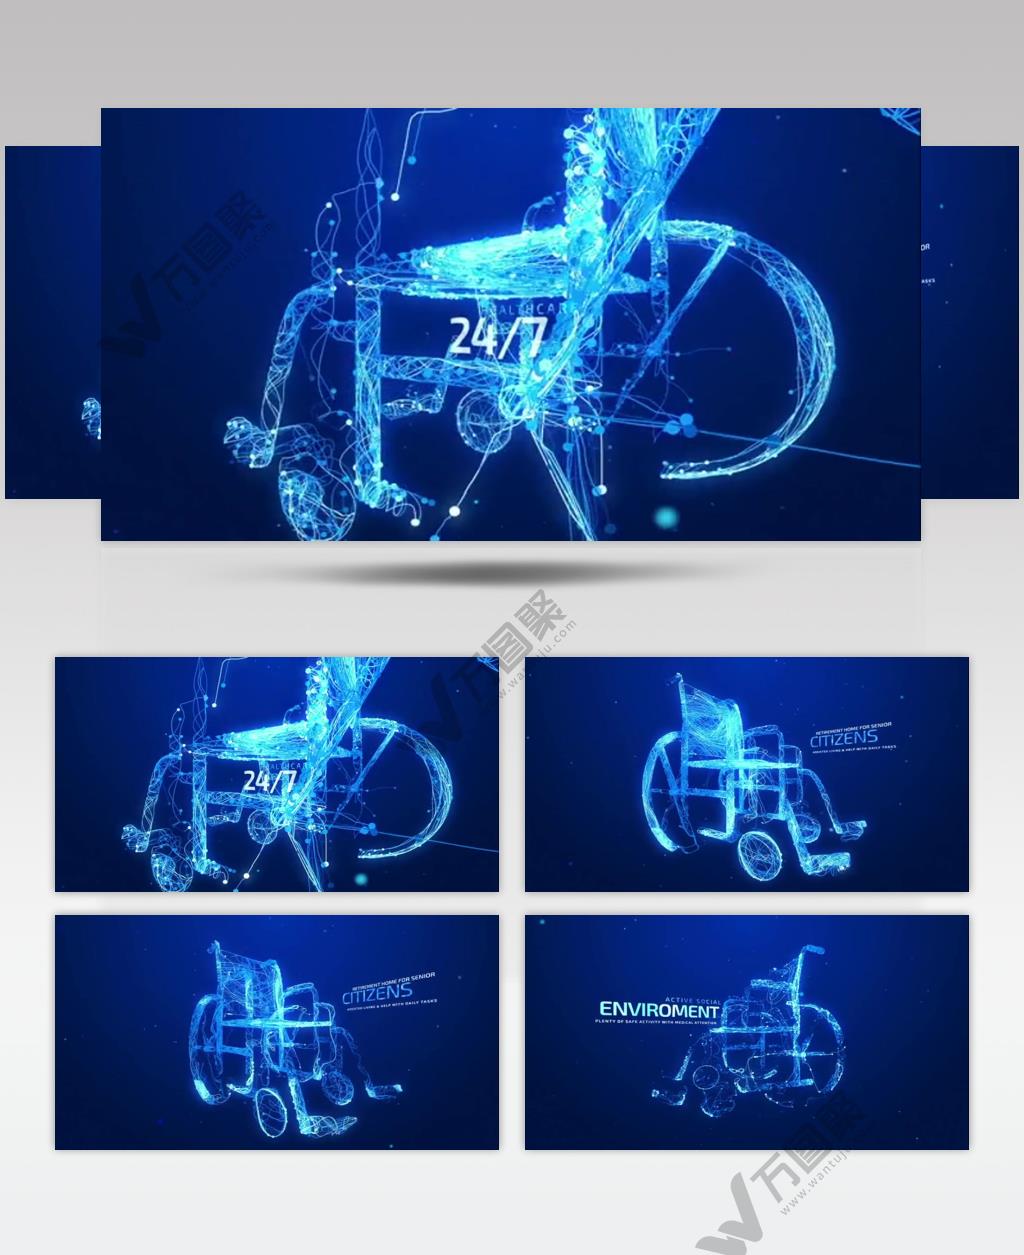 AE 15896 特效医疗轮椅 ae素材源文件